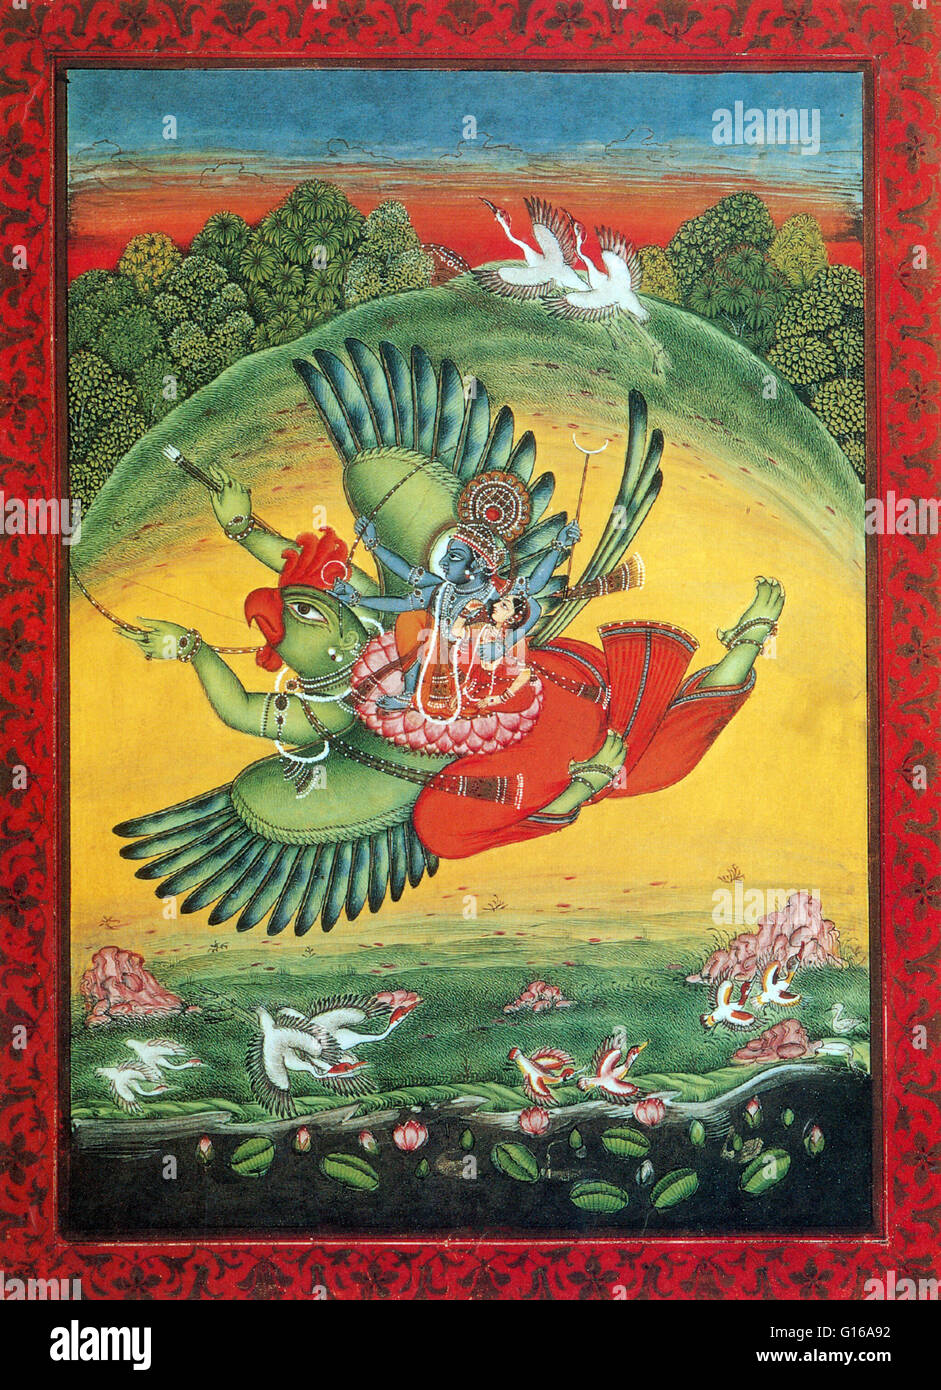 El Garuda es un gran pájaro mítico o criatura de pájaro que aparece tanto en la mitología hindú y budista. Garuda es uno de los tres principales deidades animales en la mitología hindú que ha evolucionado después del período Védico, en la historia de la India. Los demás tw Foto de stock